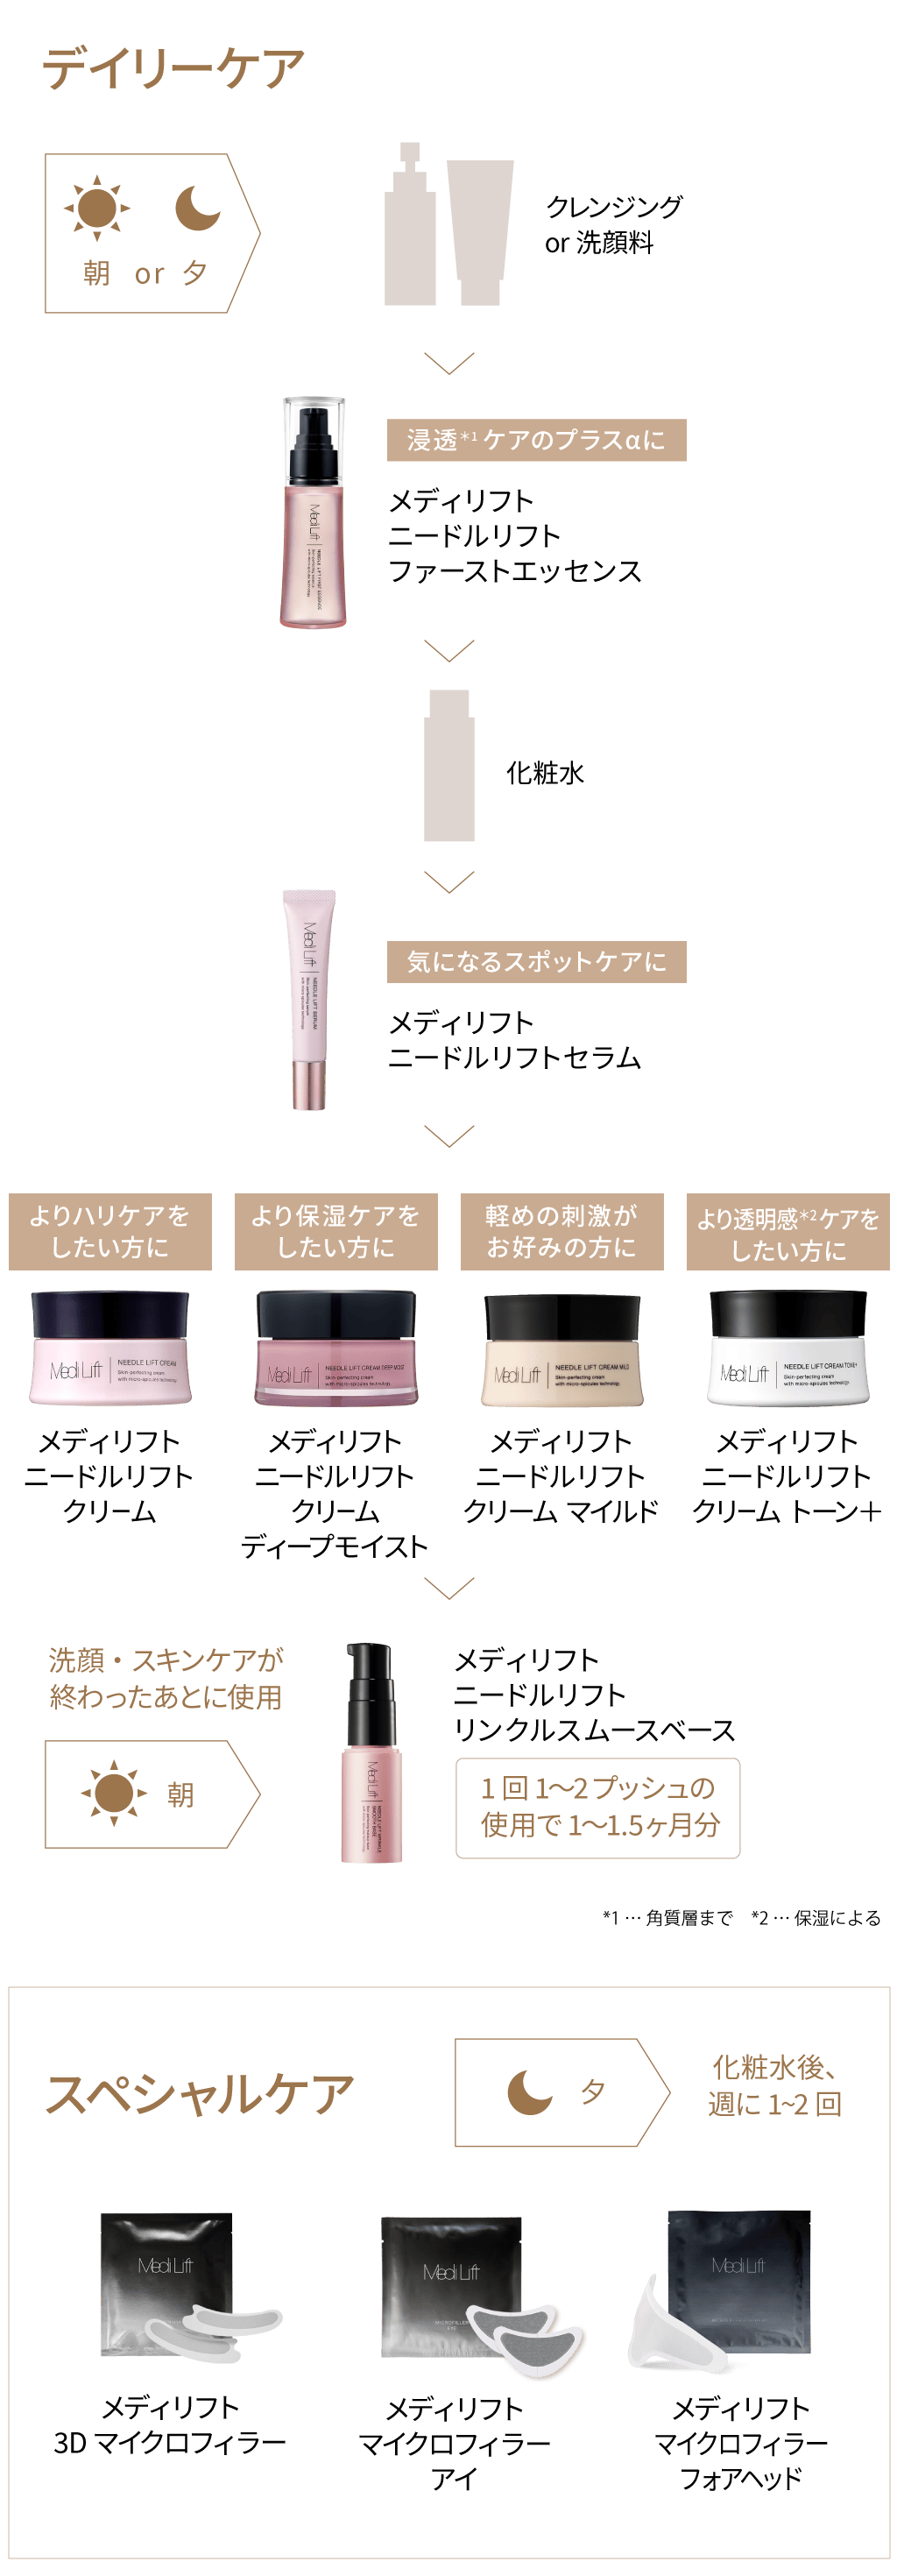 美容/健康 美容機器 メディリフト コスメティクス | YA-MAN TOKYO JAPAN | ヤーマン株式会社